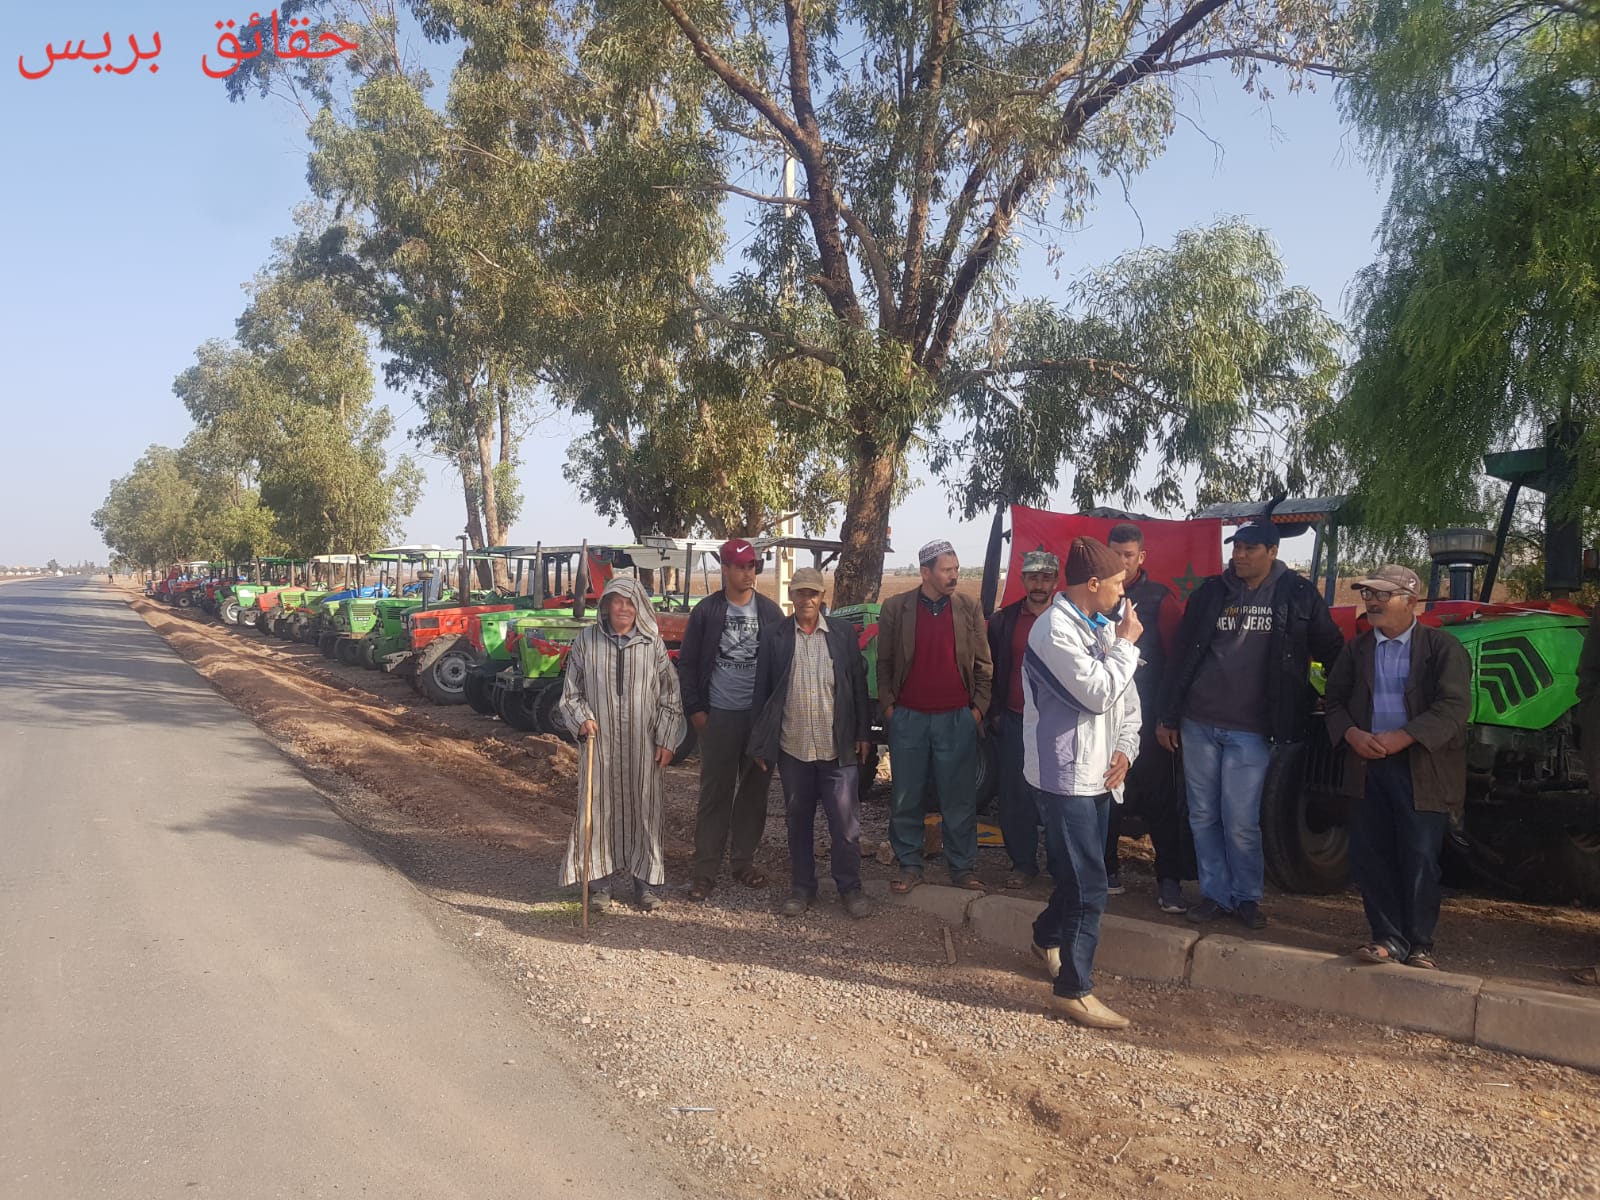   احتجاجات الفلاحين بإقليم سطات على غلاء الكازوال  والبذور (فيديو من جماعة سيدي امحمد بن رحال )